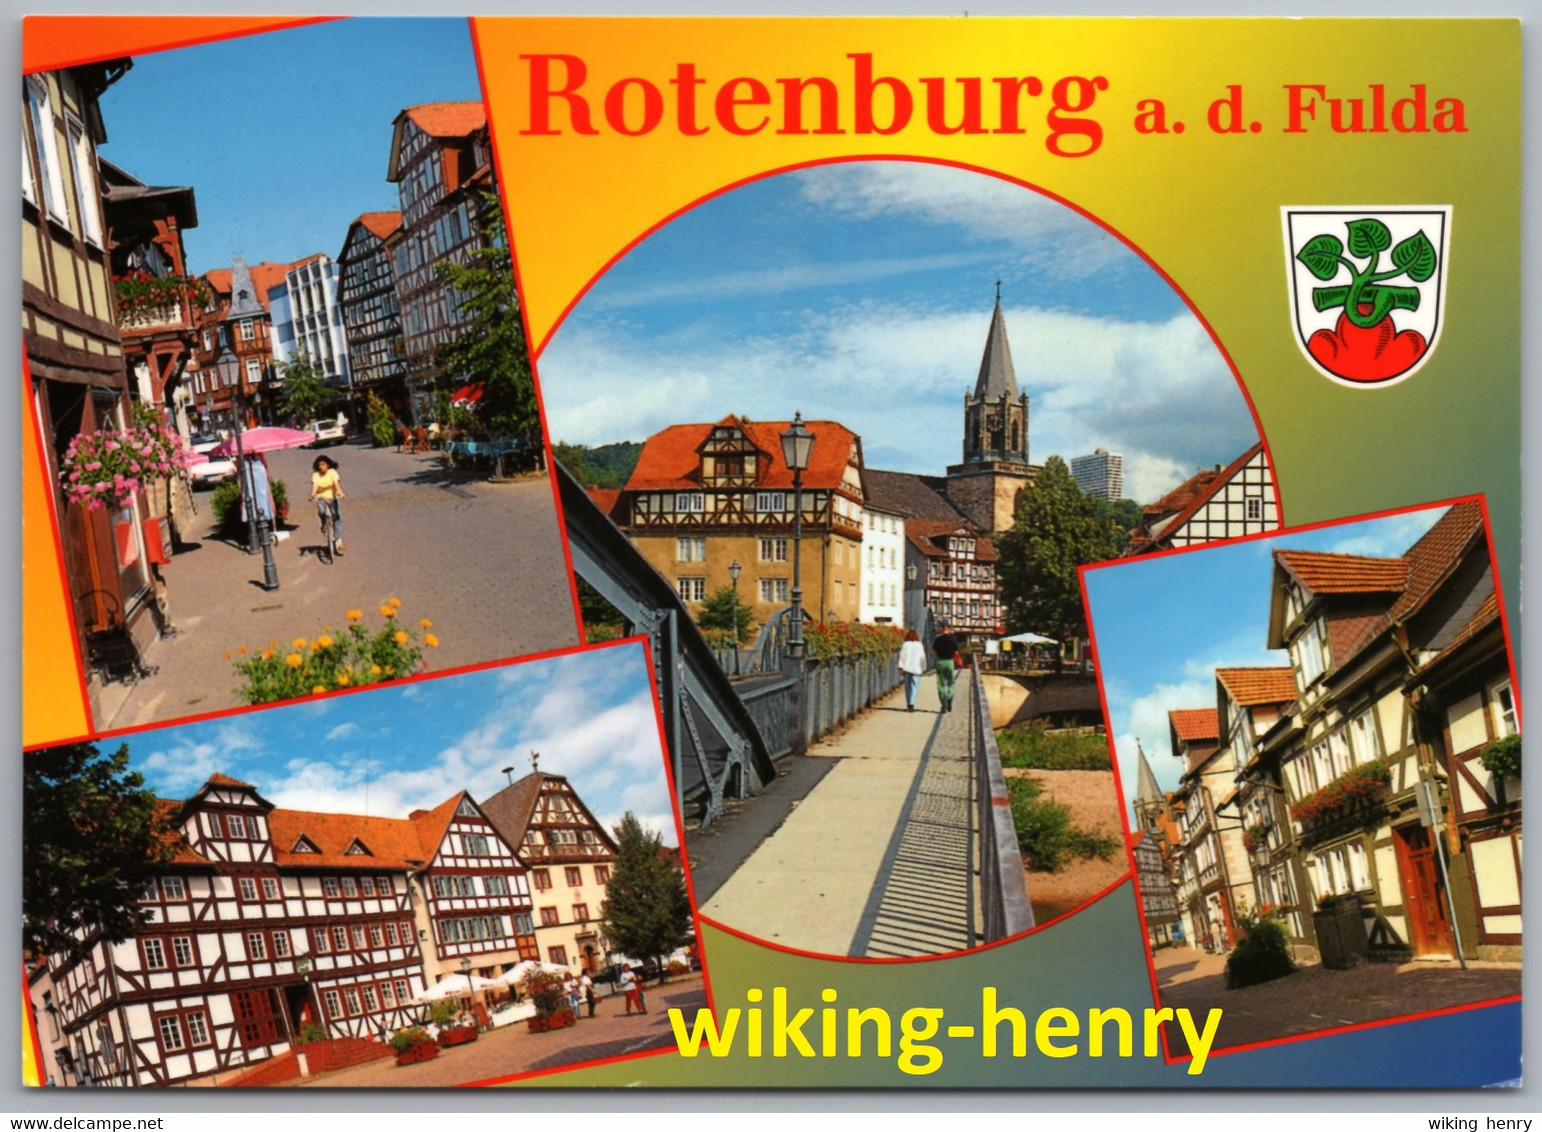 Rotenburg An Der Fulda - Mehrbildkarte 1 - Rotenburg